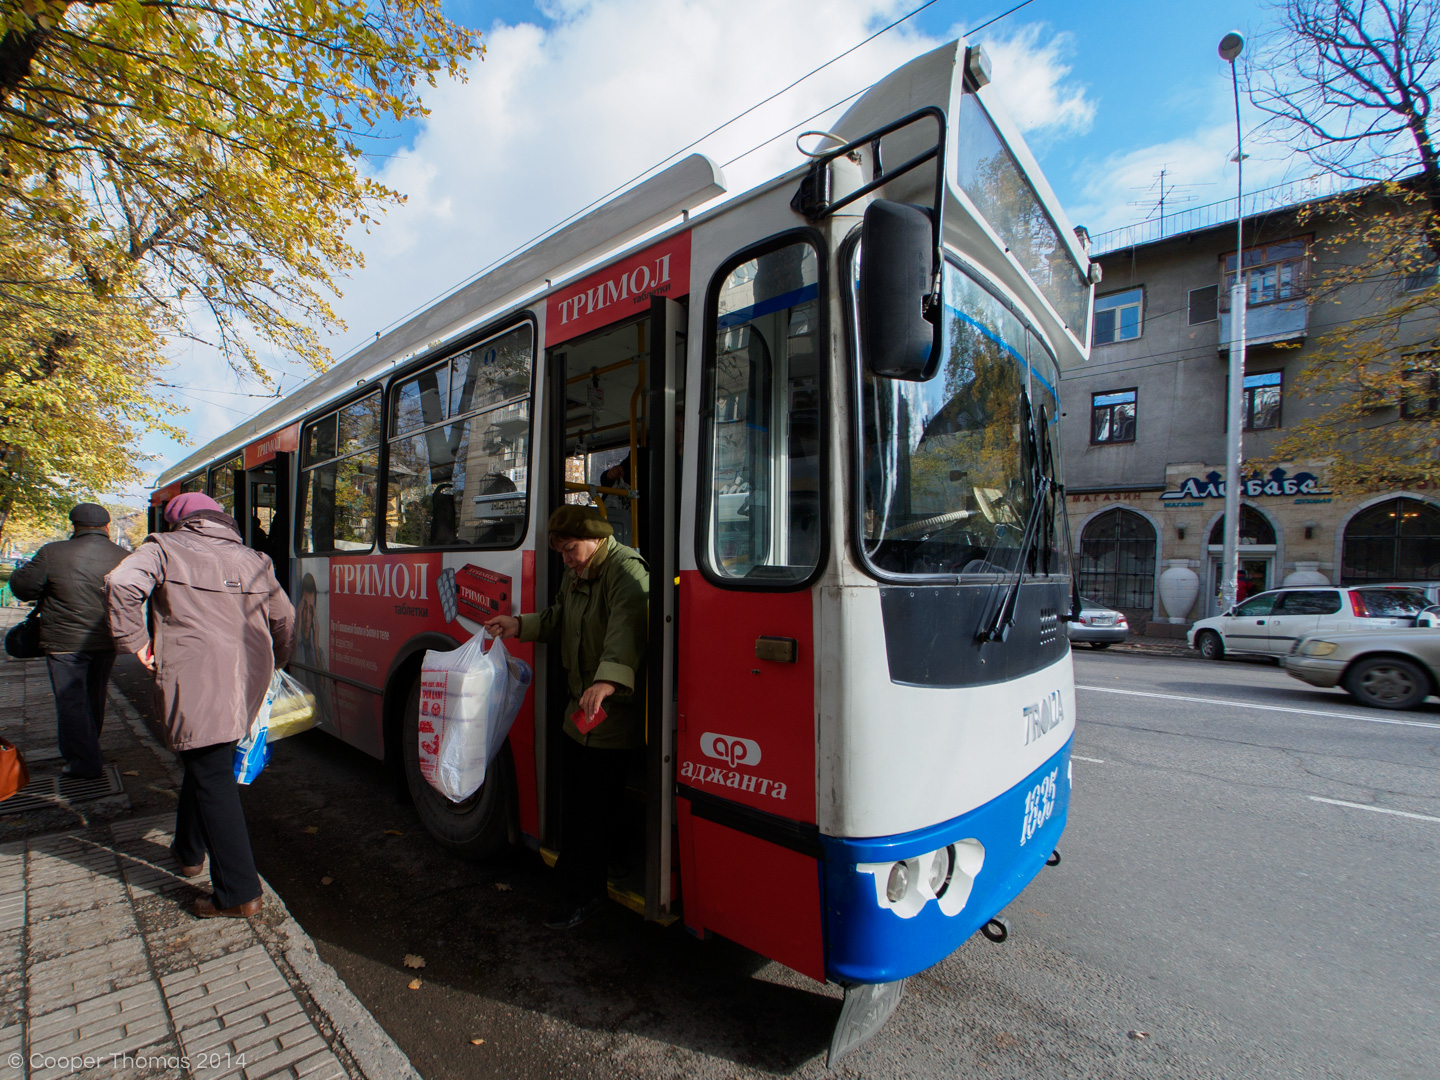 Babushkas disembark from a tram